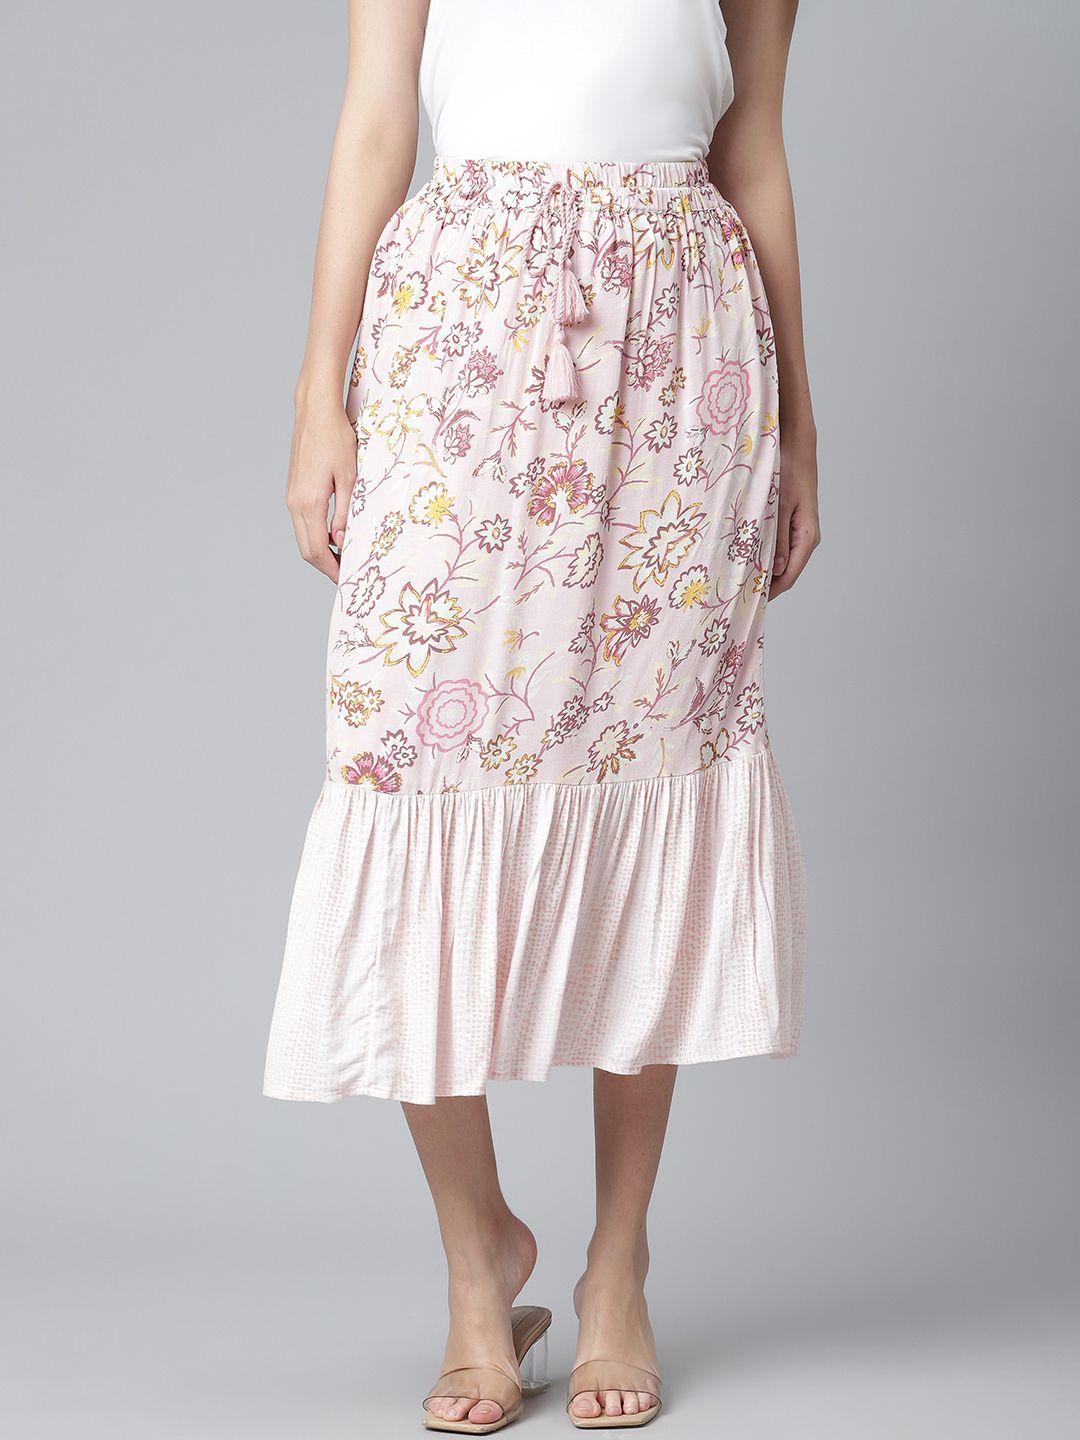 marks & spencer women pink floral print a-line skirt